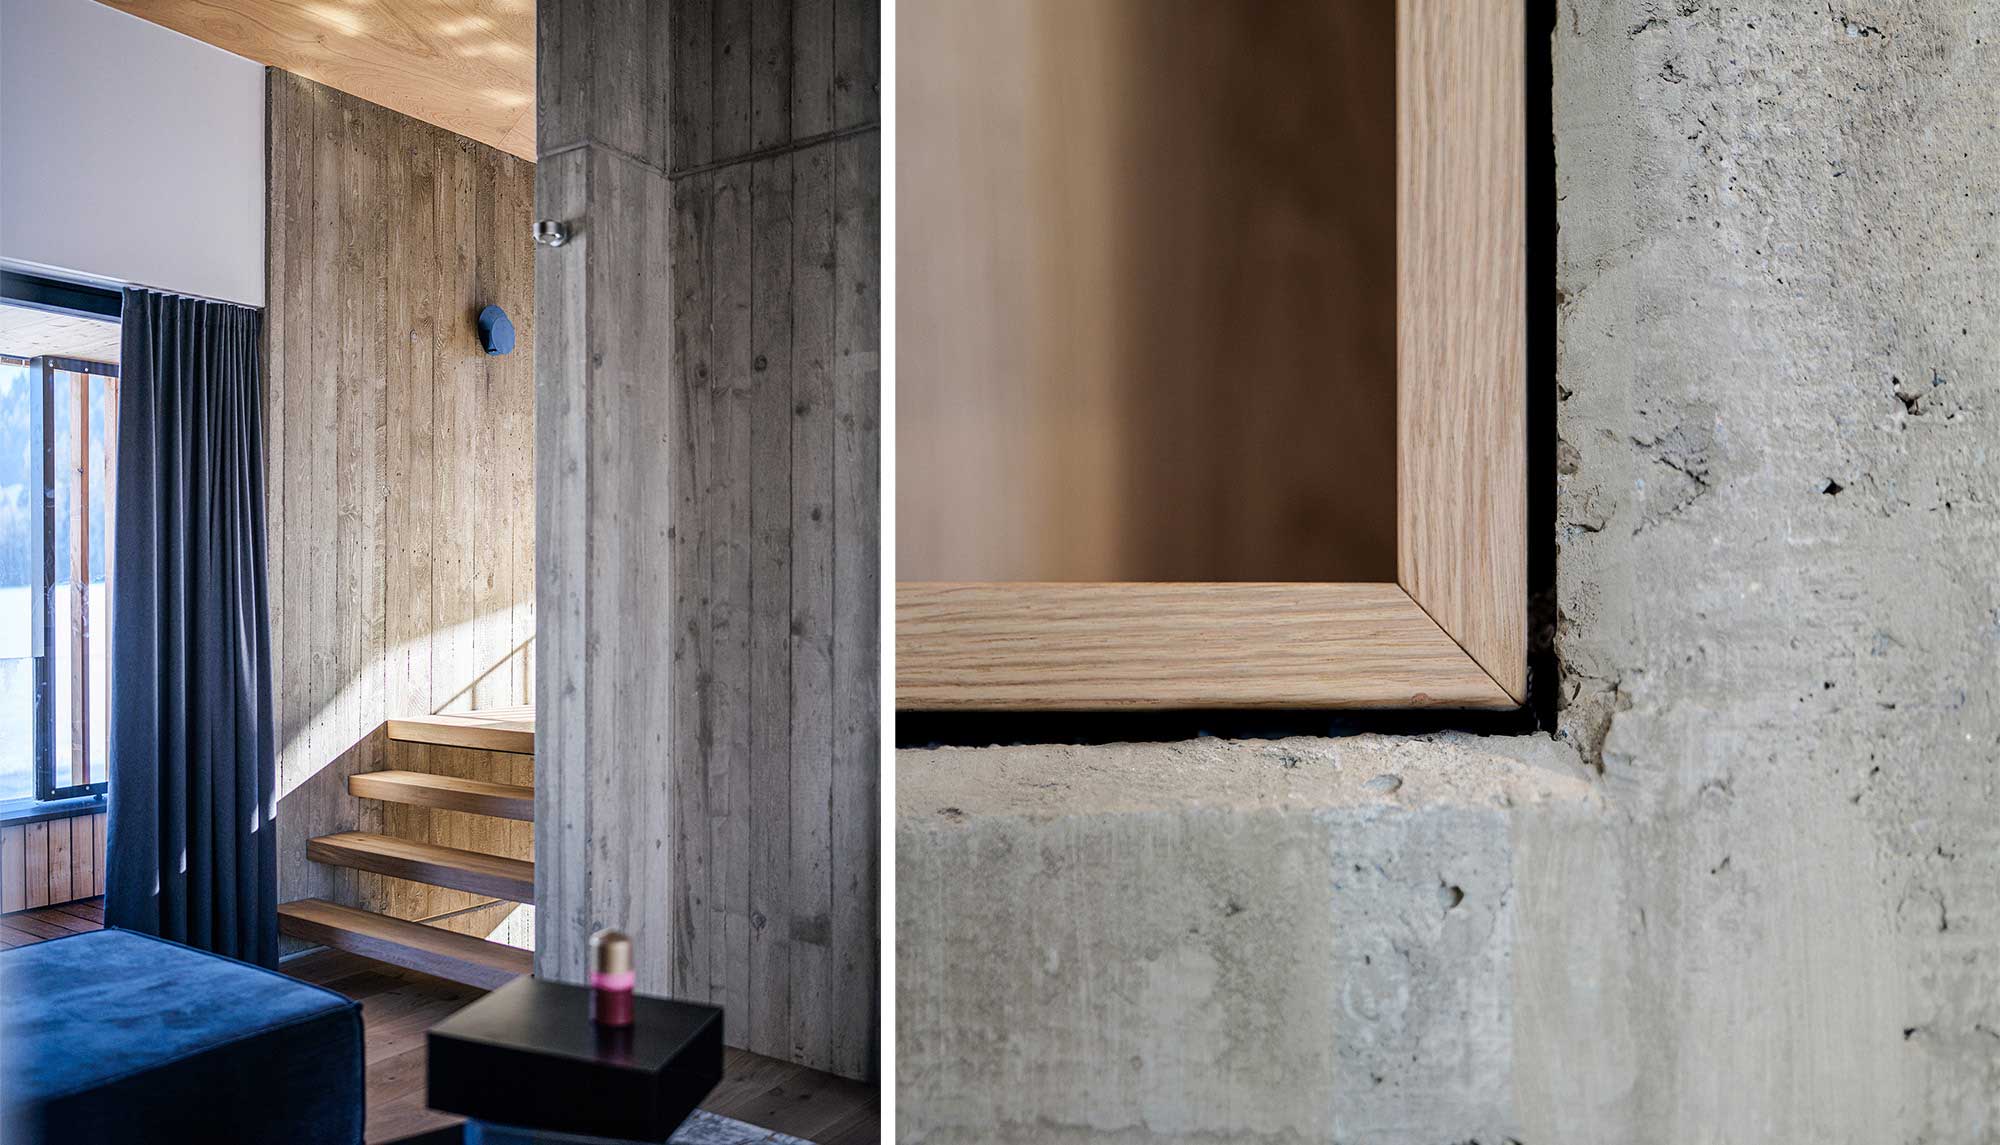 Wand aus Sichtbeton | Kombination aus Beton und Holz | Moderner Holzbau im minimalistischen Stil | Planung Architekt